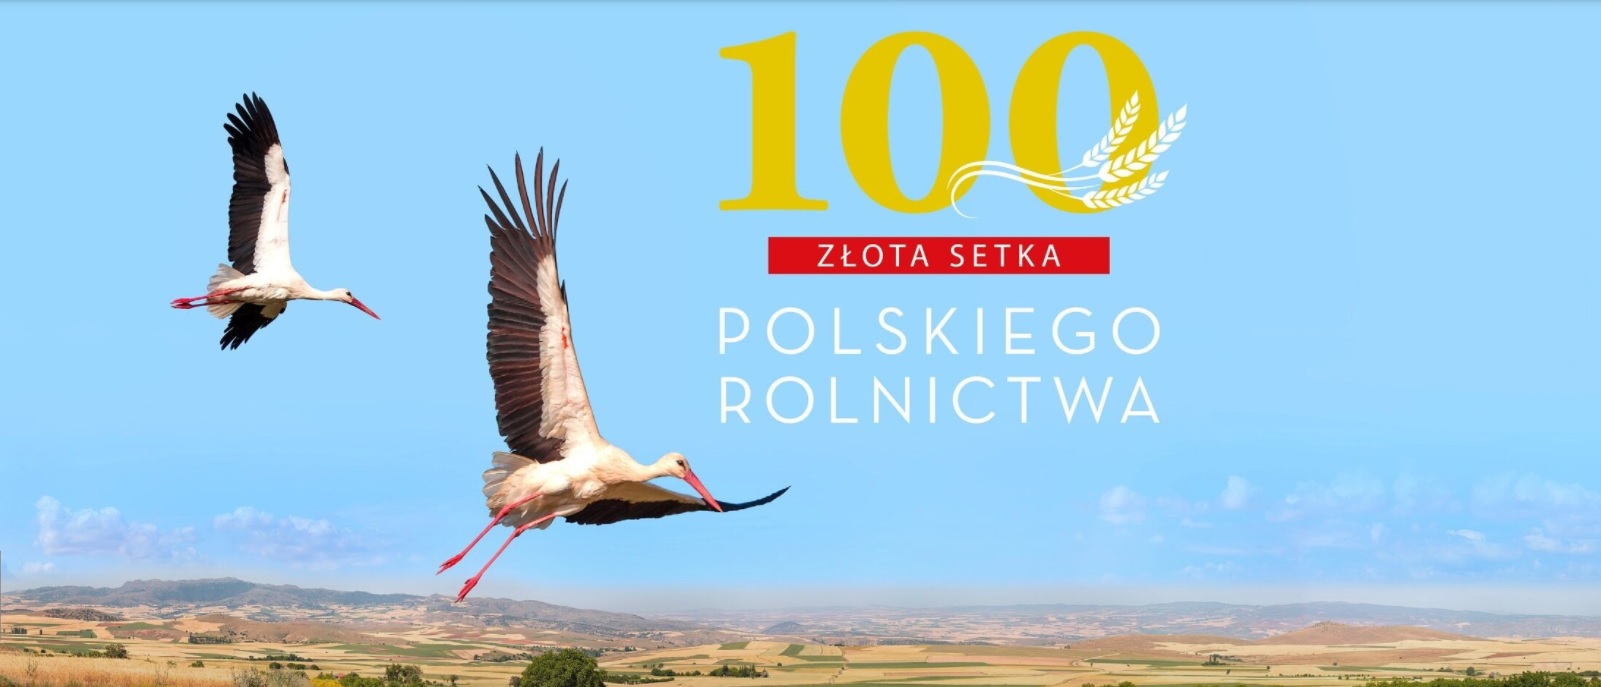 Złota setka polskiego rolnictwa